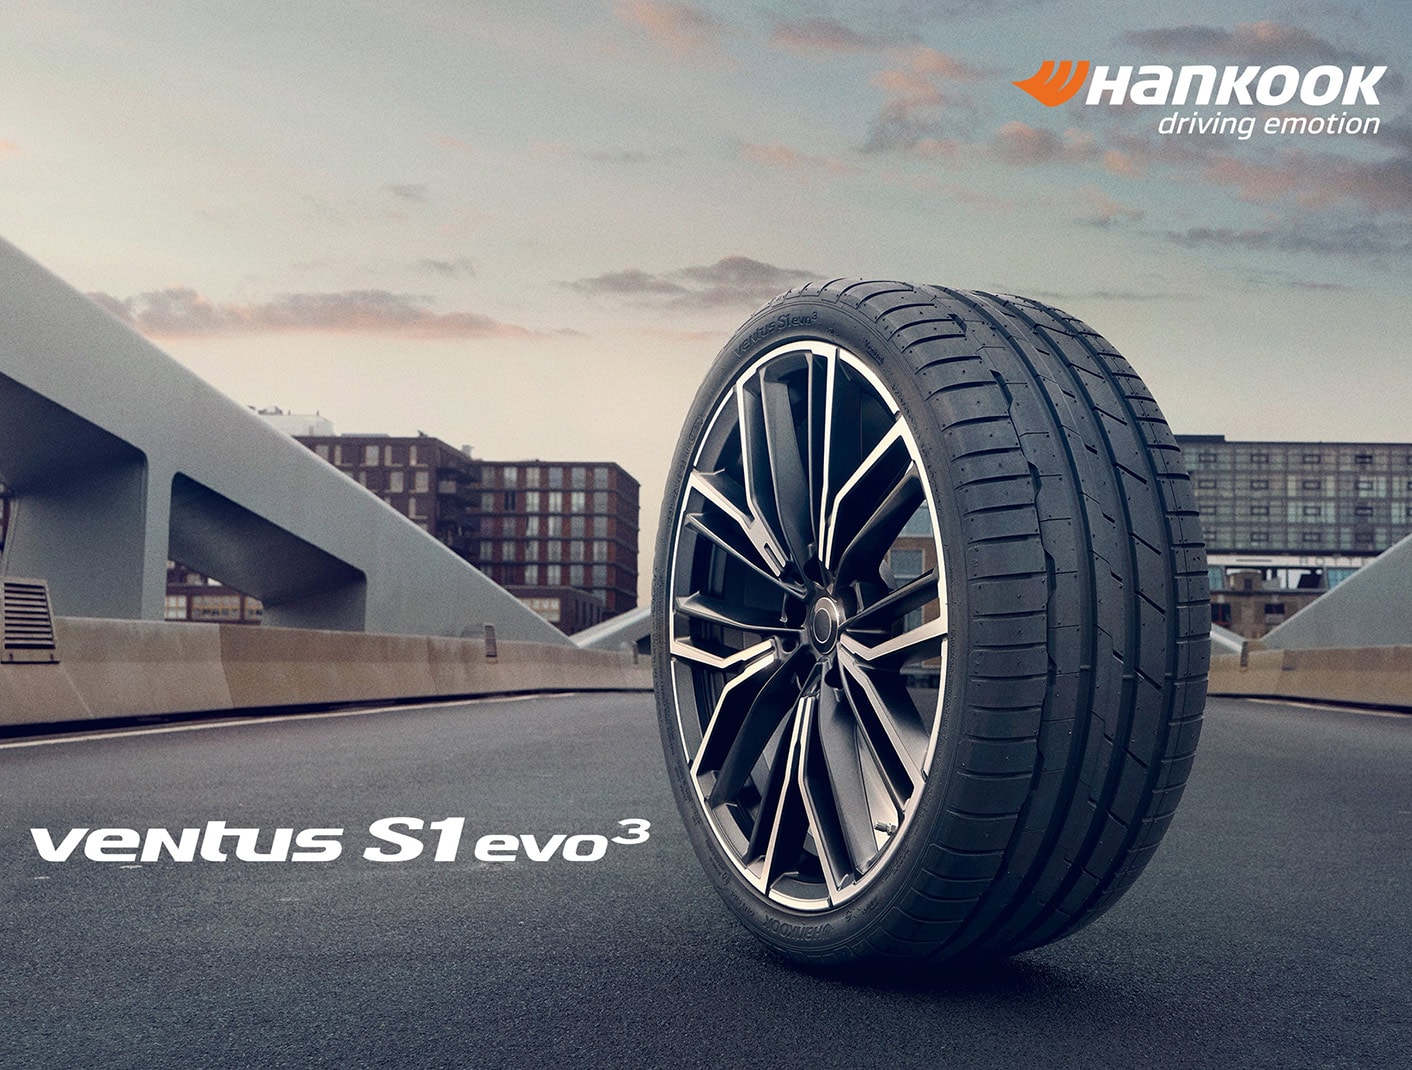 Le Ventus S1 evo 3 de Hankook Tire, pneu de première monte pour la BMW i4 